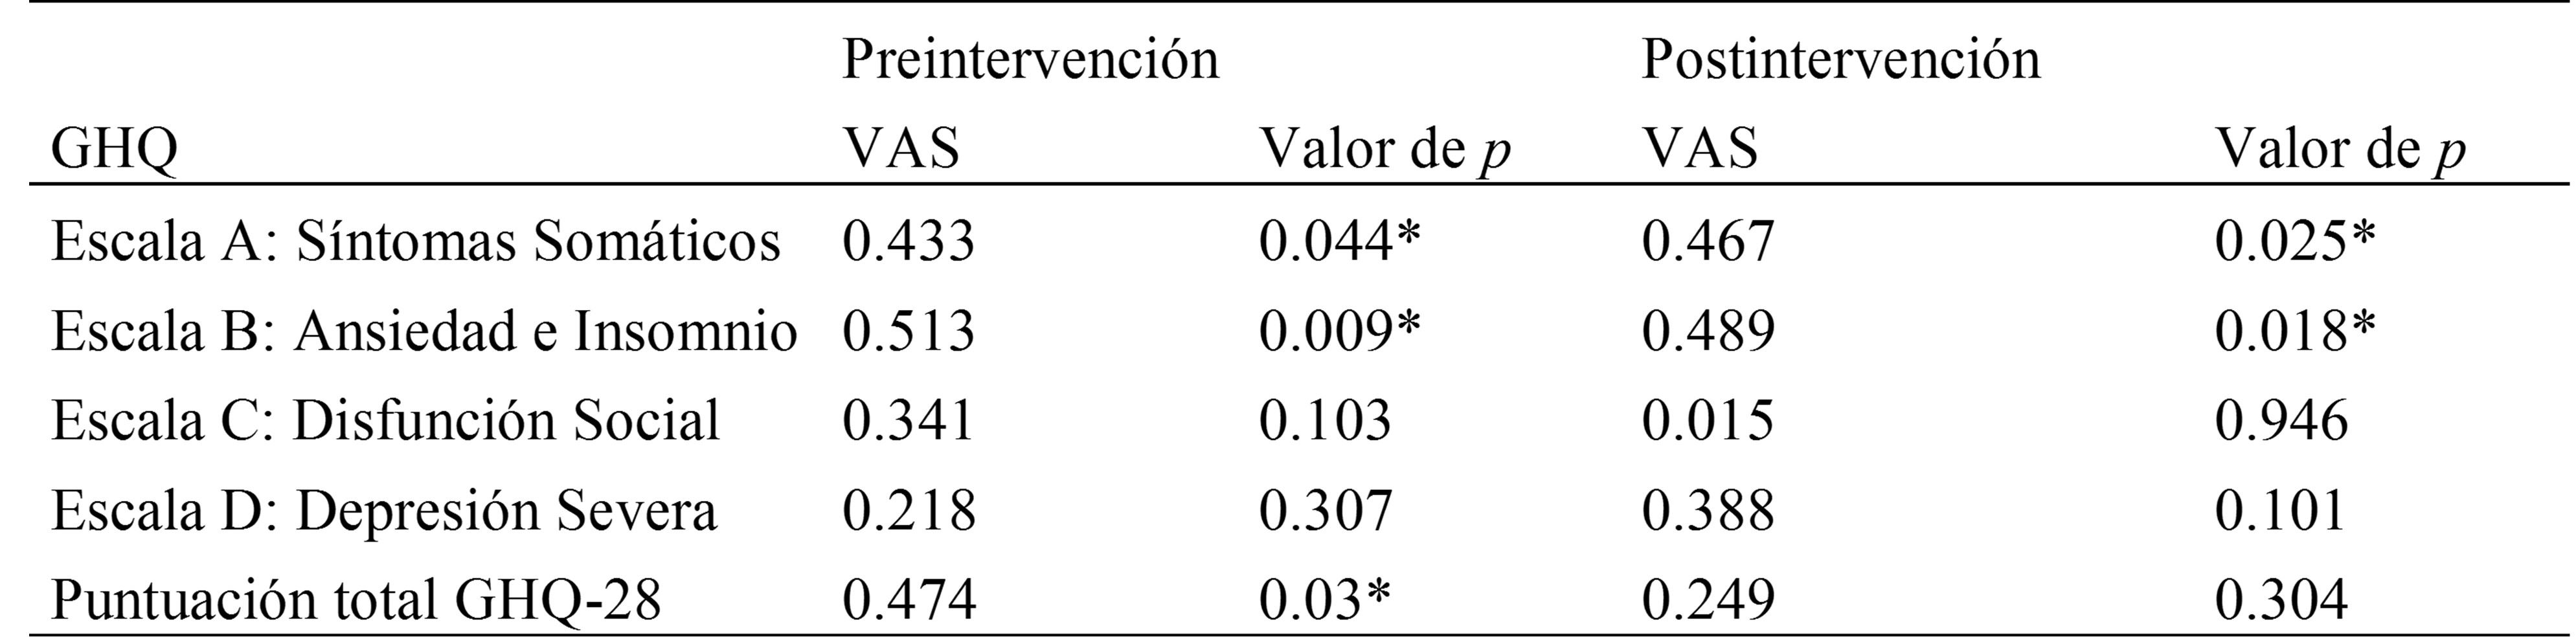 
Valores del coeficiente de correlación entre el GHQ y la
VAS, y su significación estadística, antes y después de la intervención 
